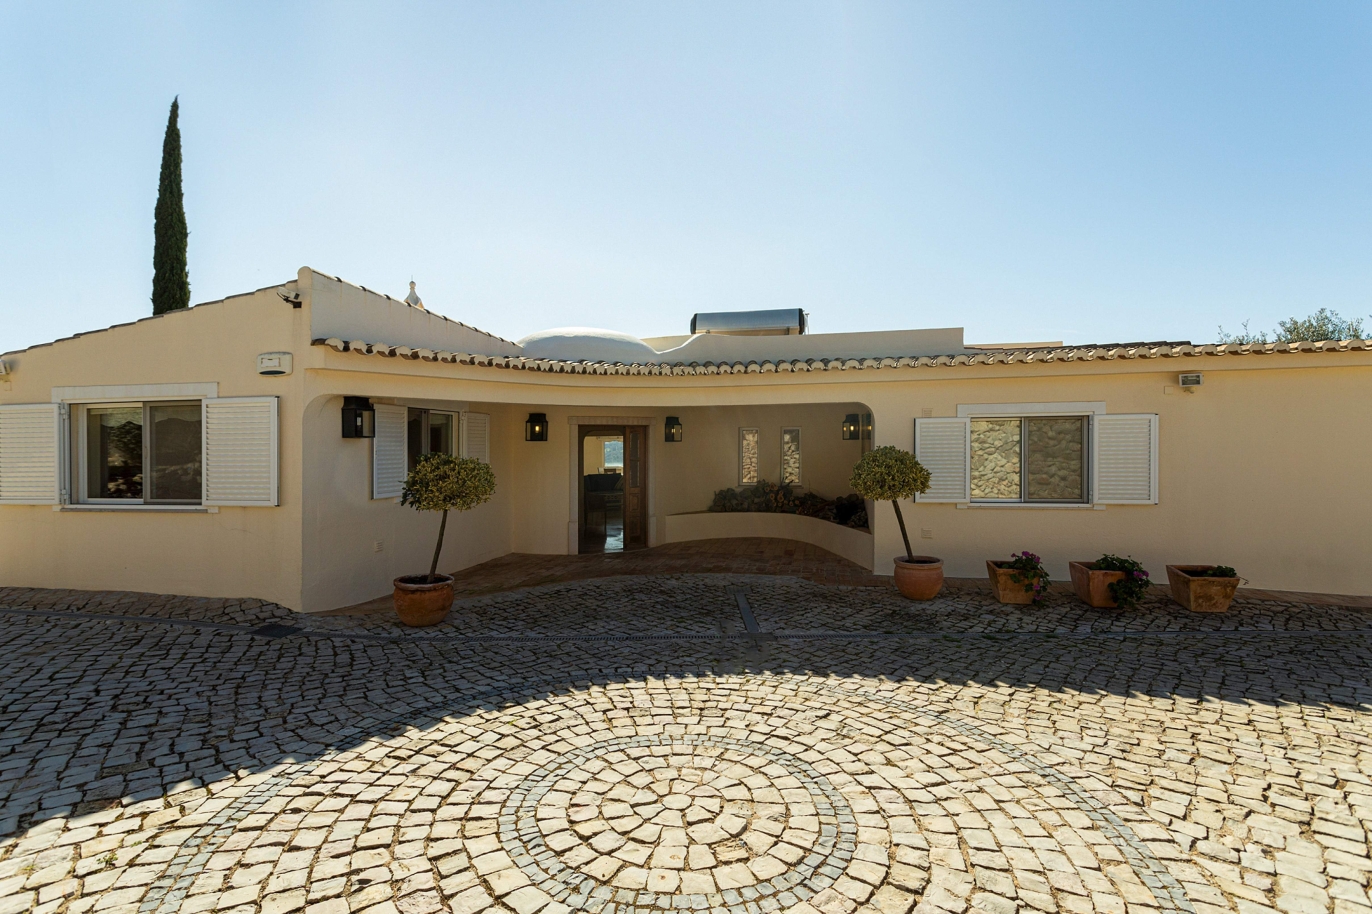 3 Bedroom Villa with swimming pool, for sale in São Brás de Alportel - Algarve_192235